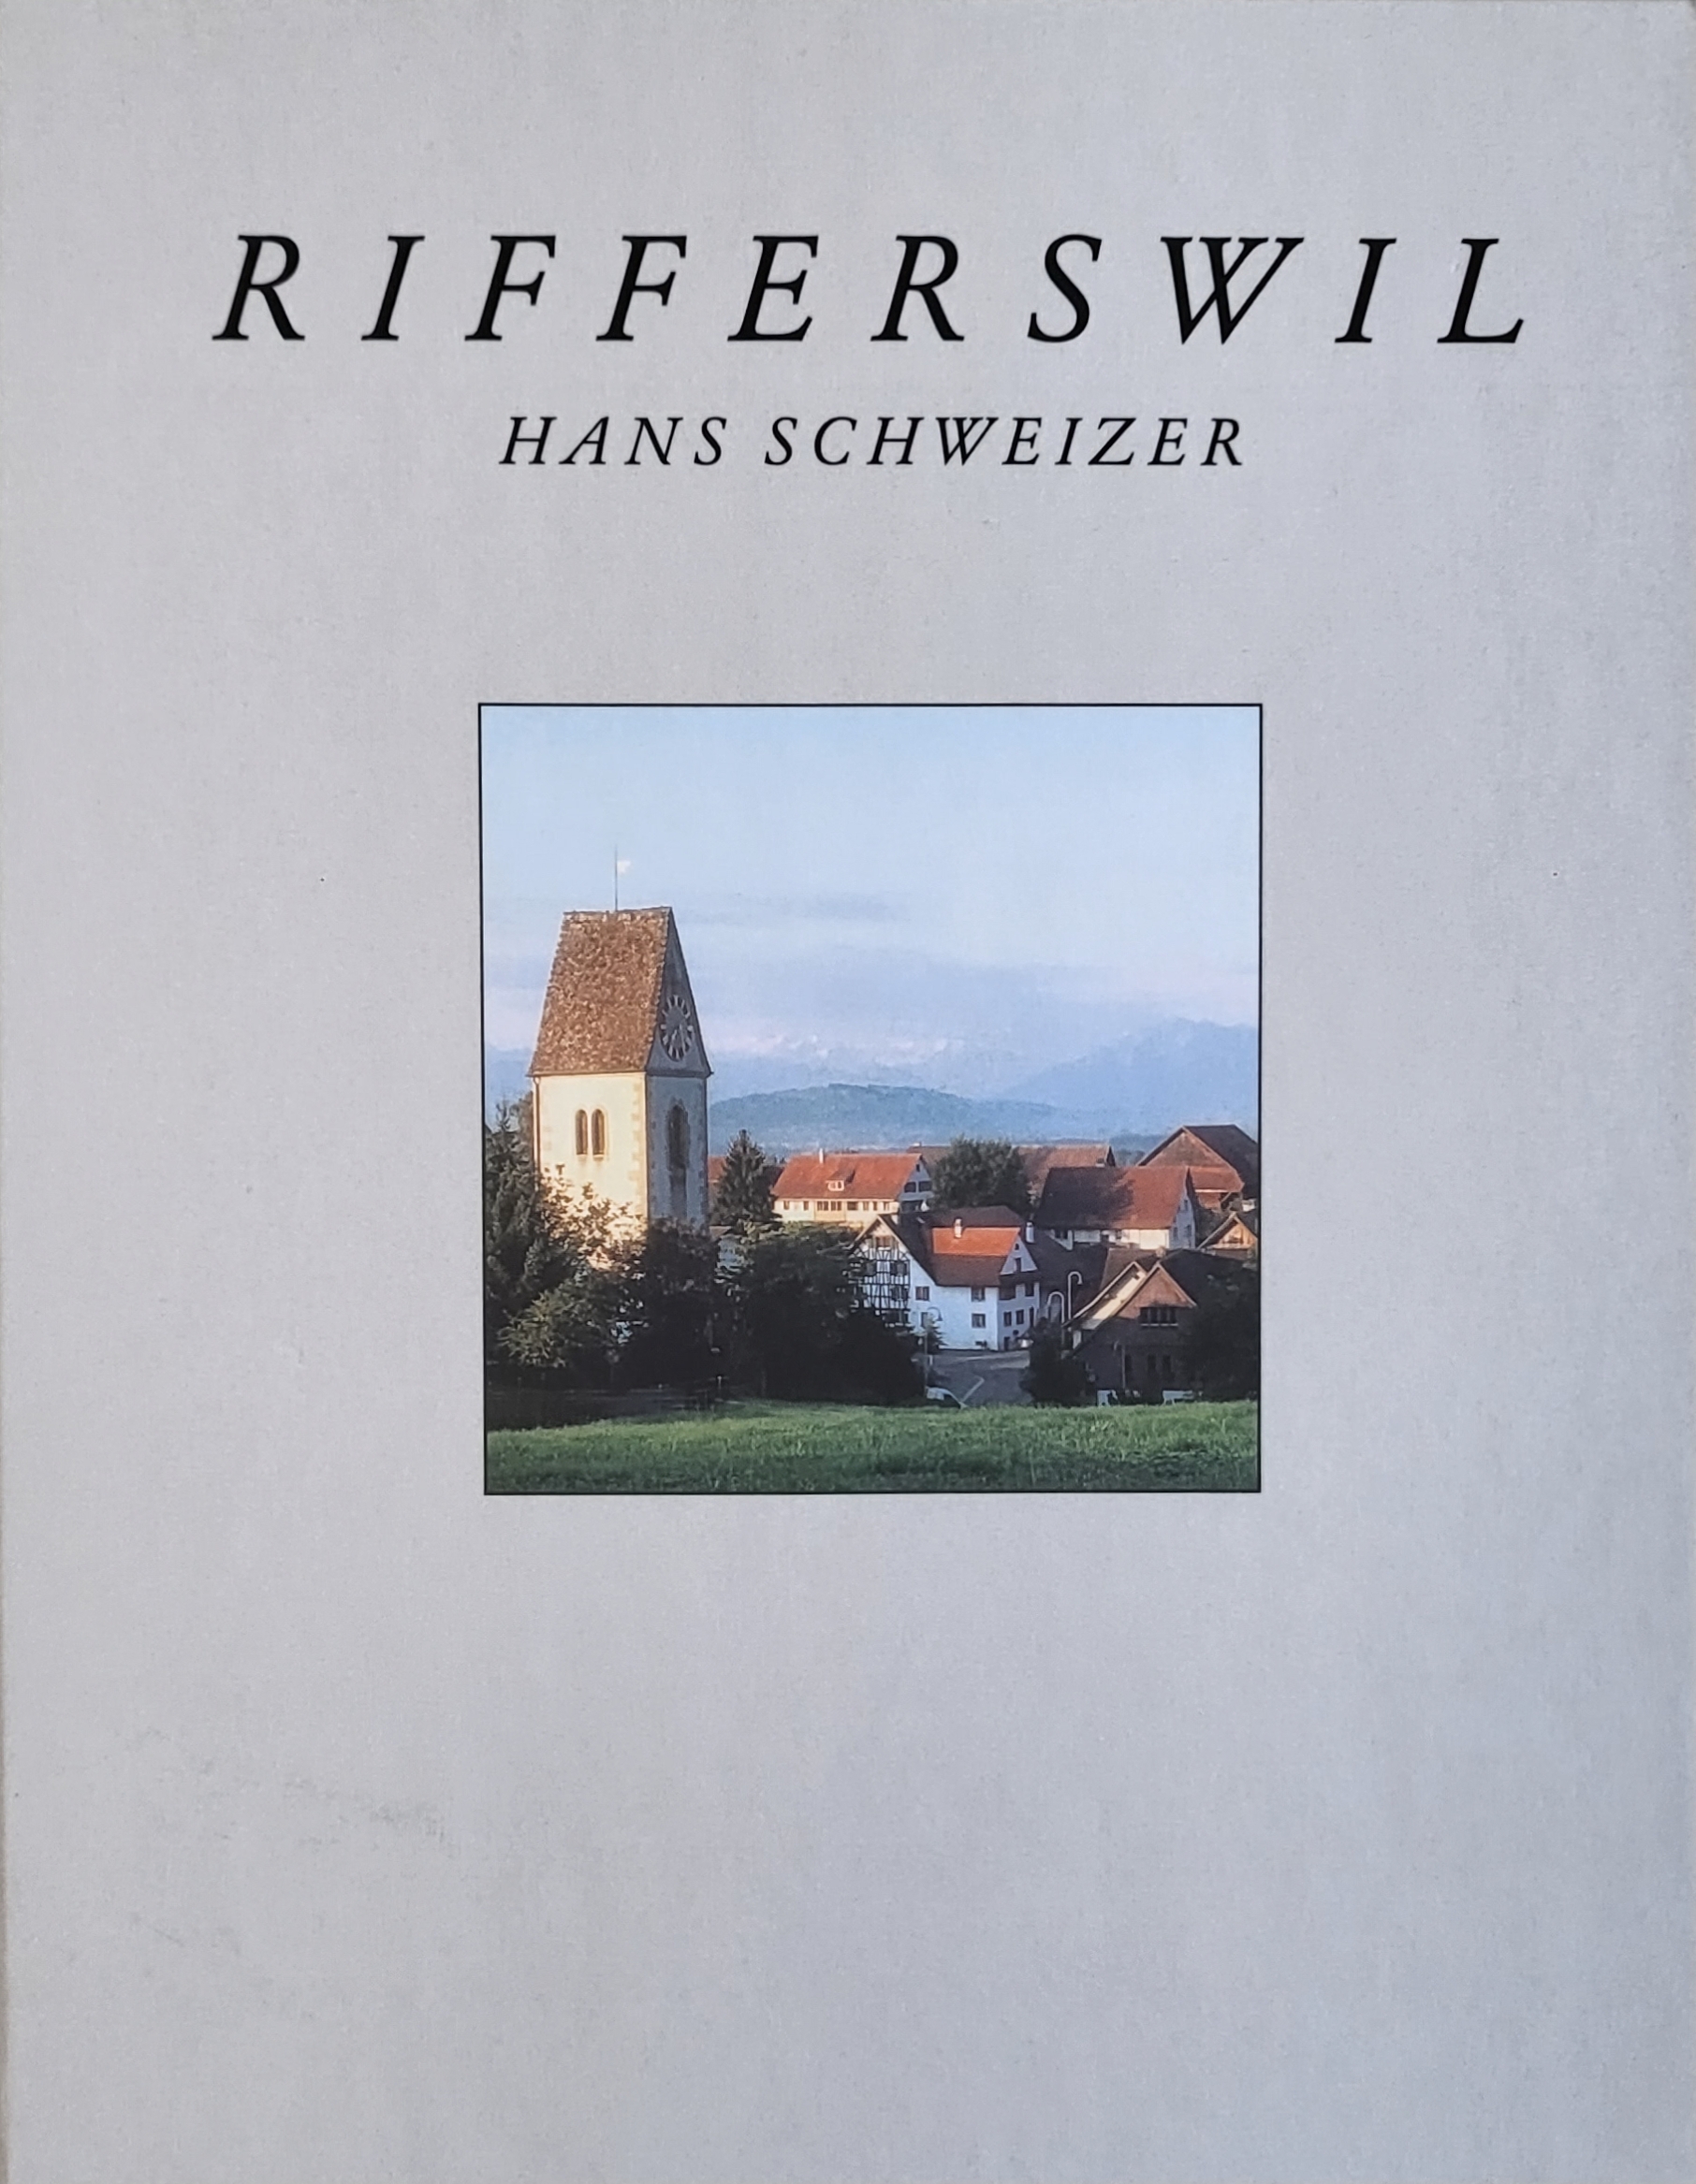 Rifferswil